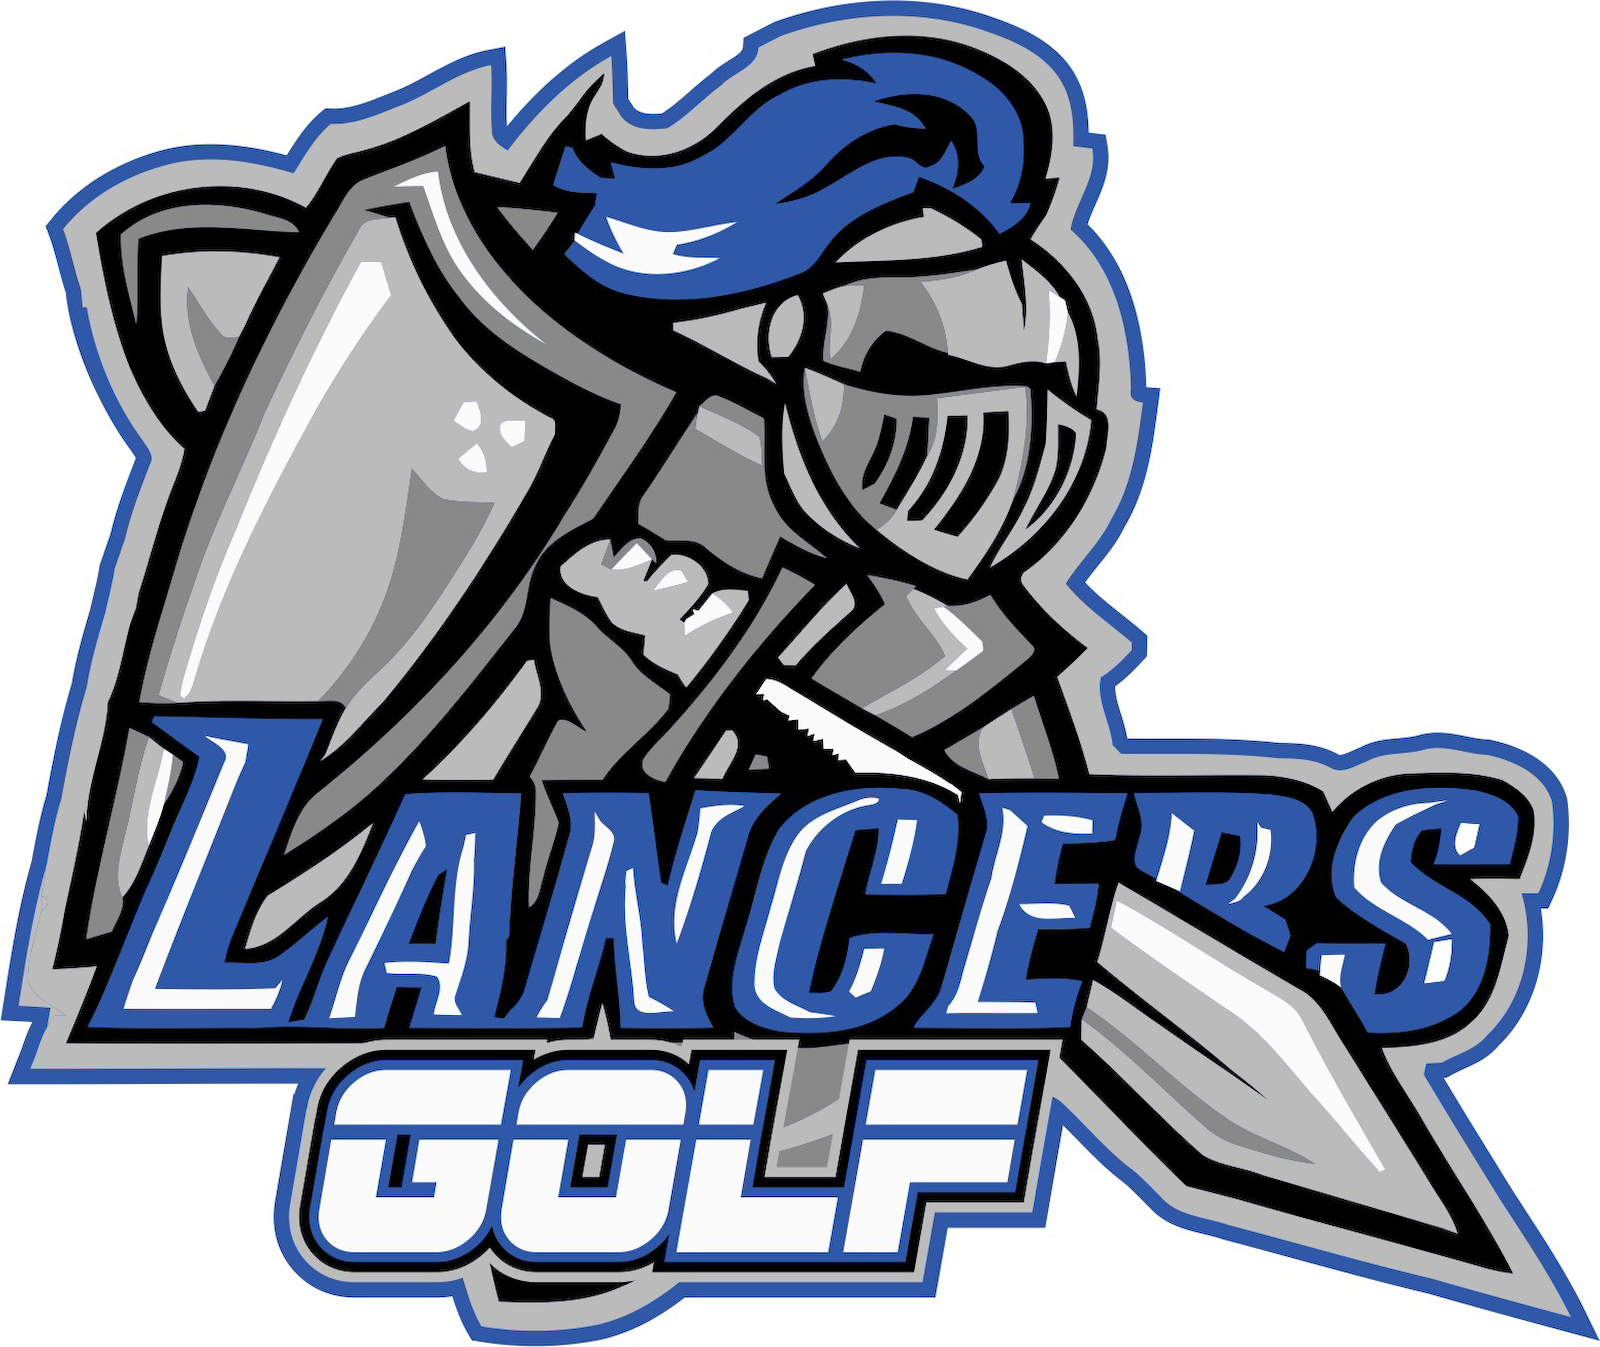 GOLF - Lancers Golf LChest Artwork 24.png